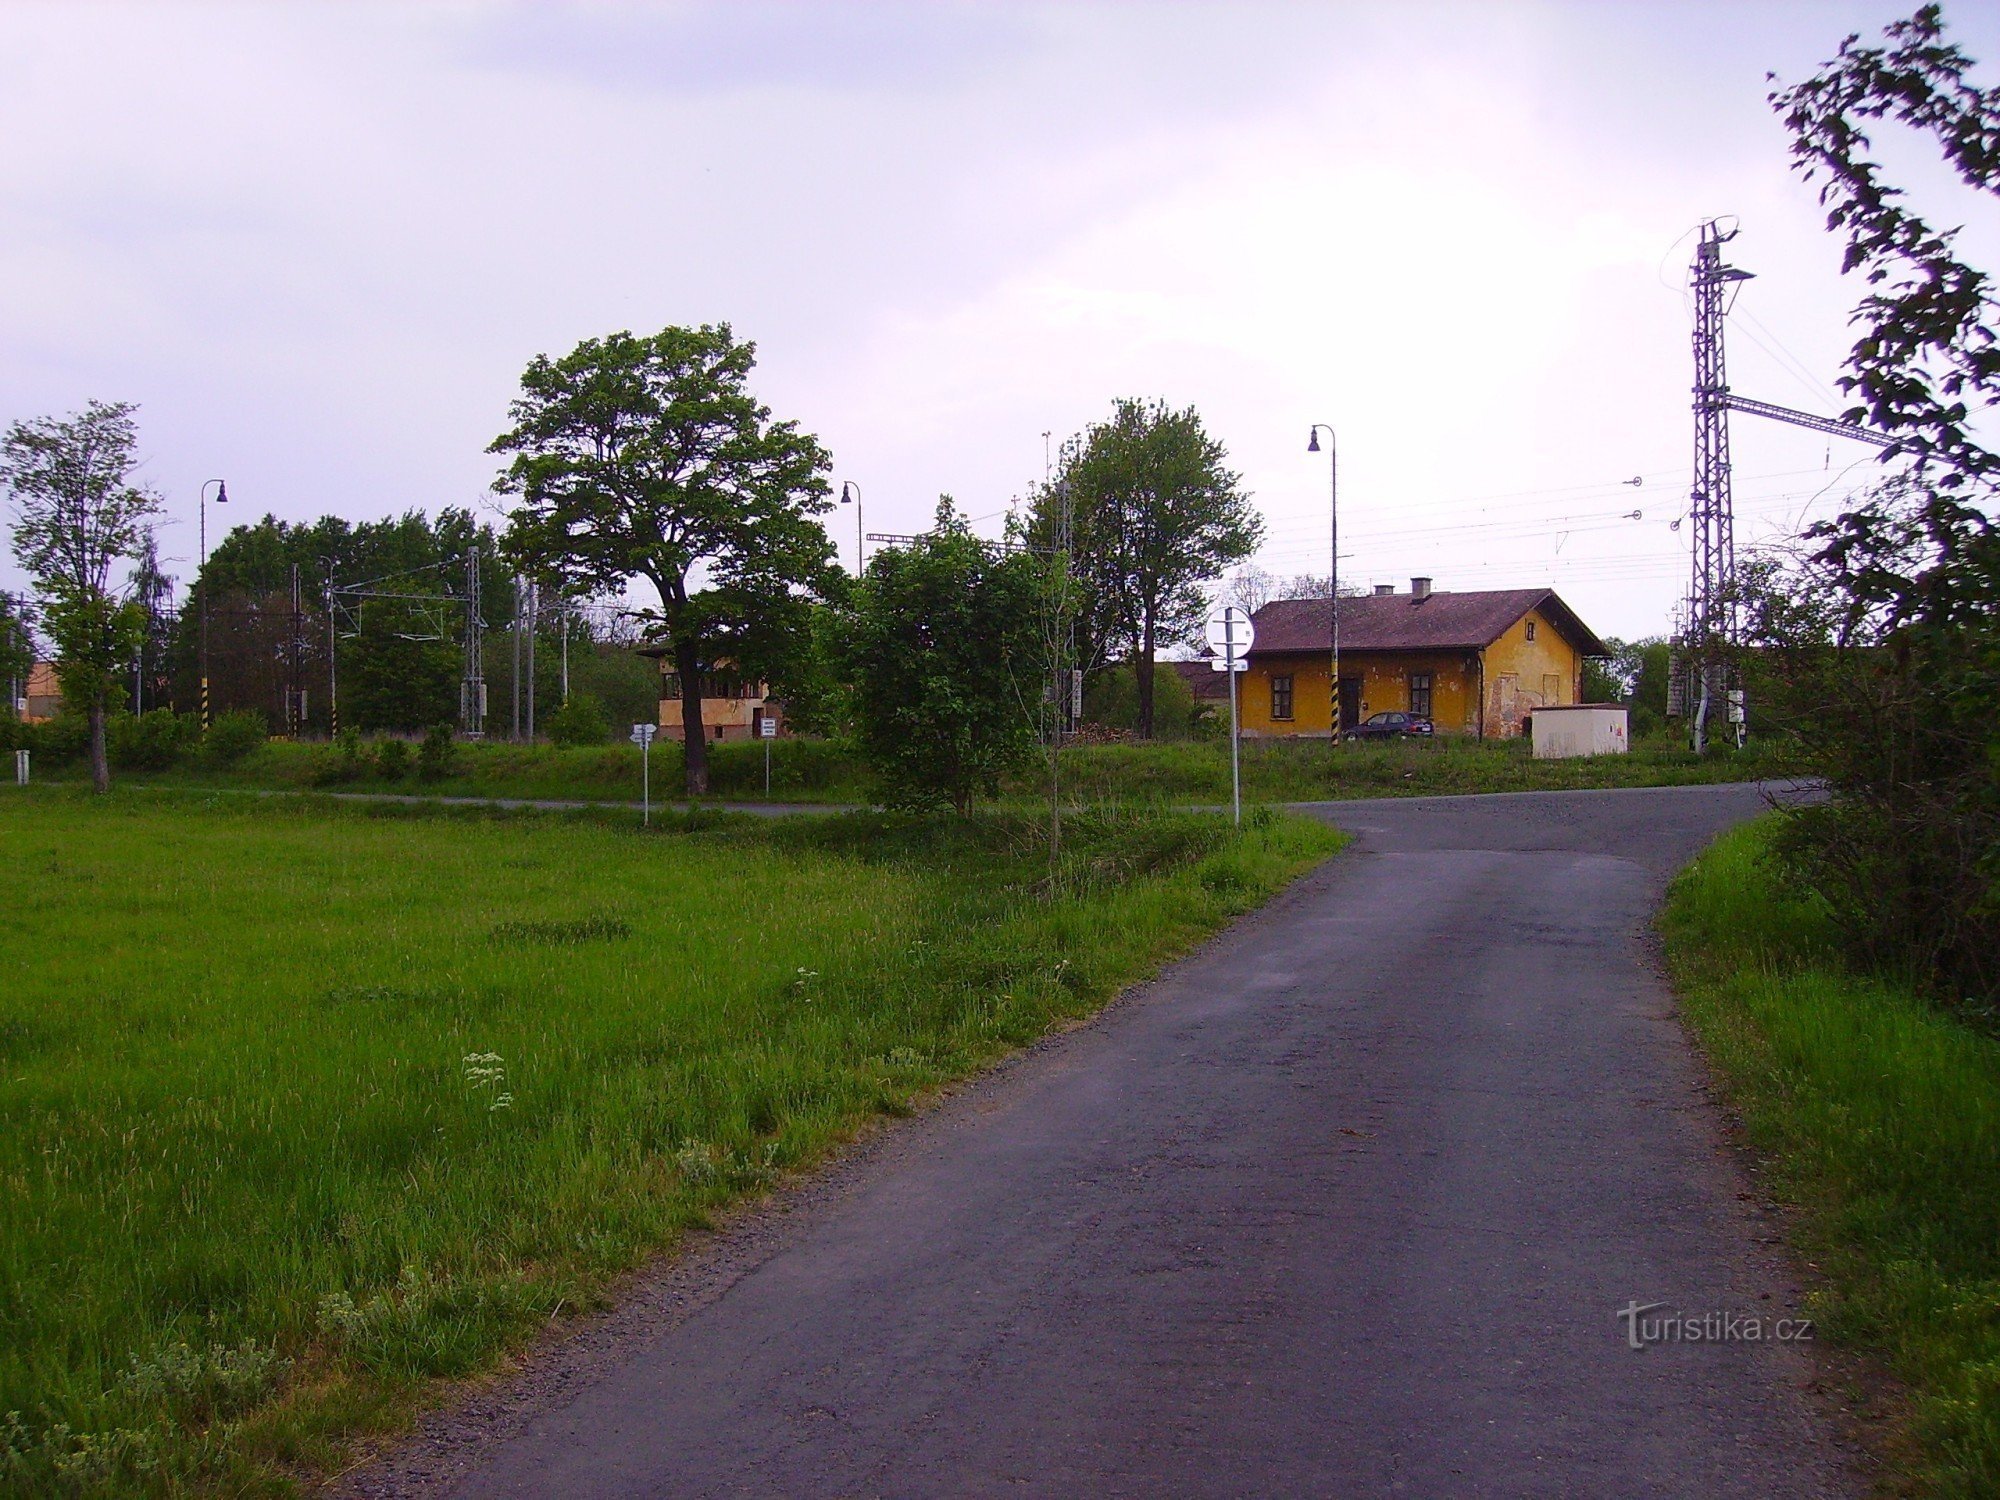 διασταύρωση ποδηλατικών διαδρομών στην Tršnice